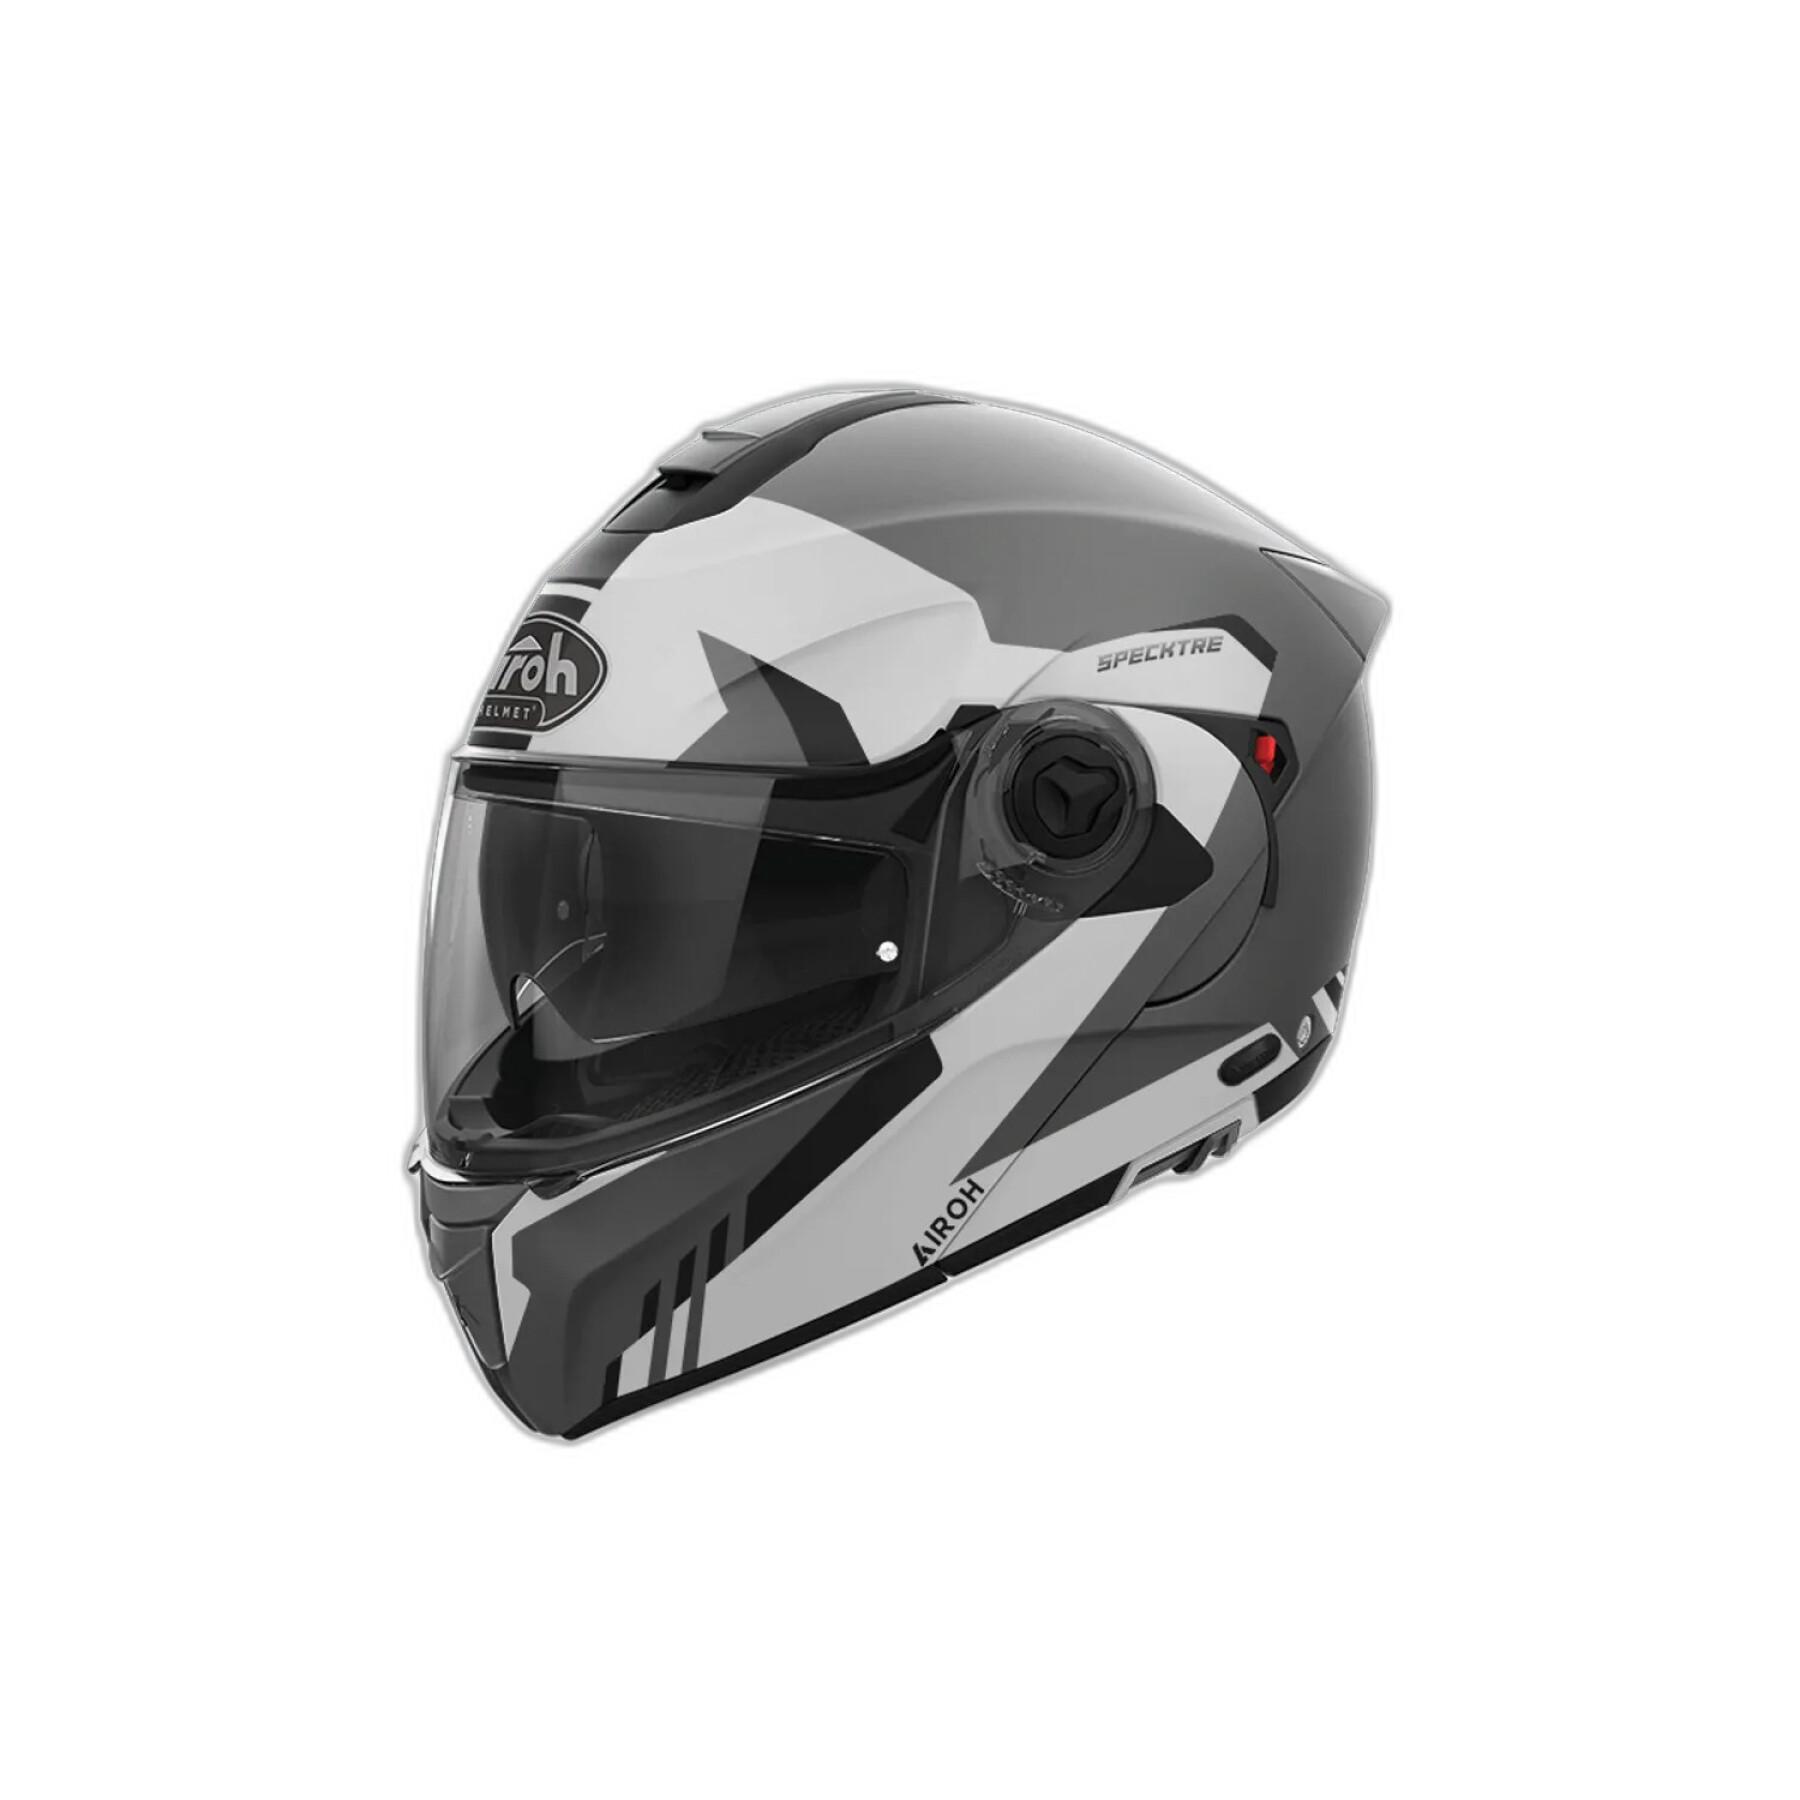 Modular motorcycle helmet Airoh Specktre Clever